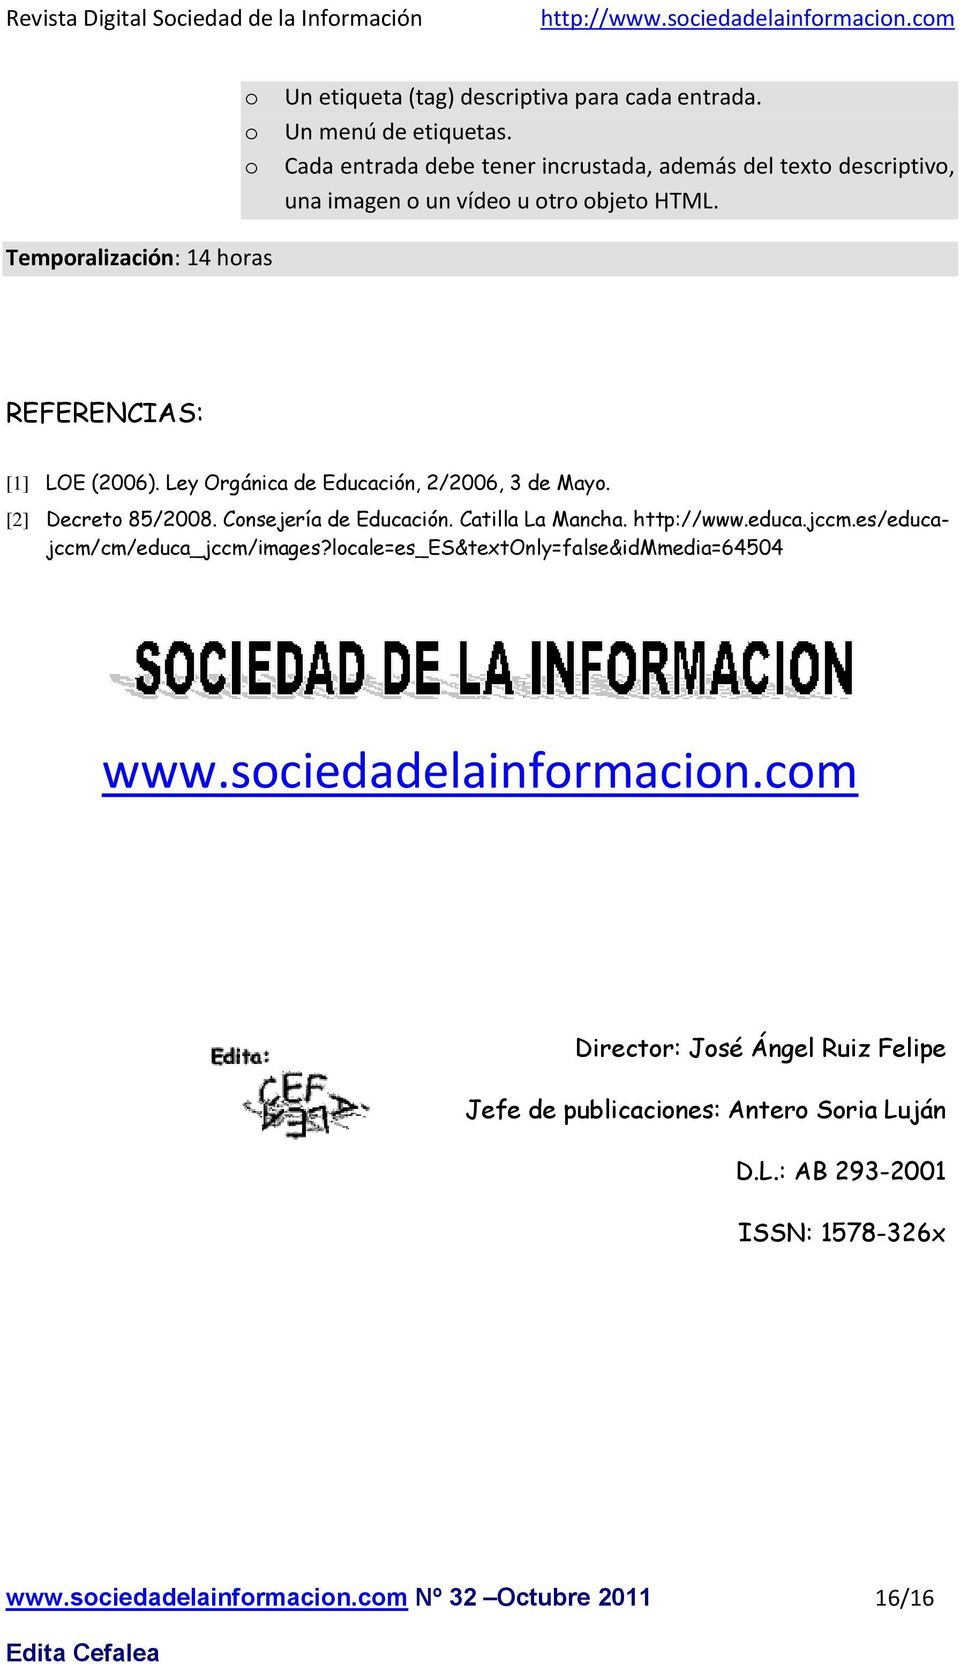 Ley Orgánica de Educación, 2/2006, 3 de May. [2] Decret 85/2008. Cnsejería de Educación. Catilla La Mancha. http://www.educa.jccm.es/educajccm/cm/educa_jccm/images?